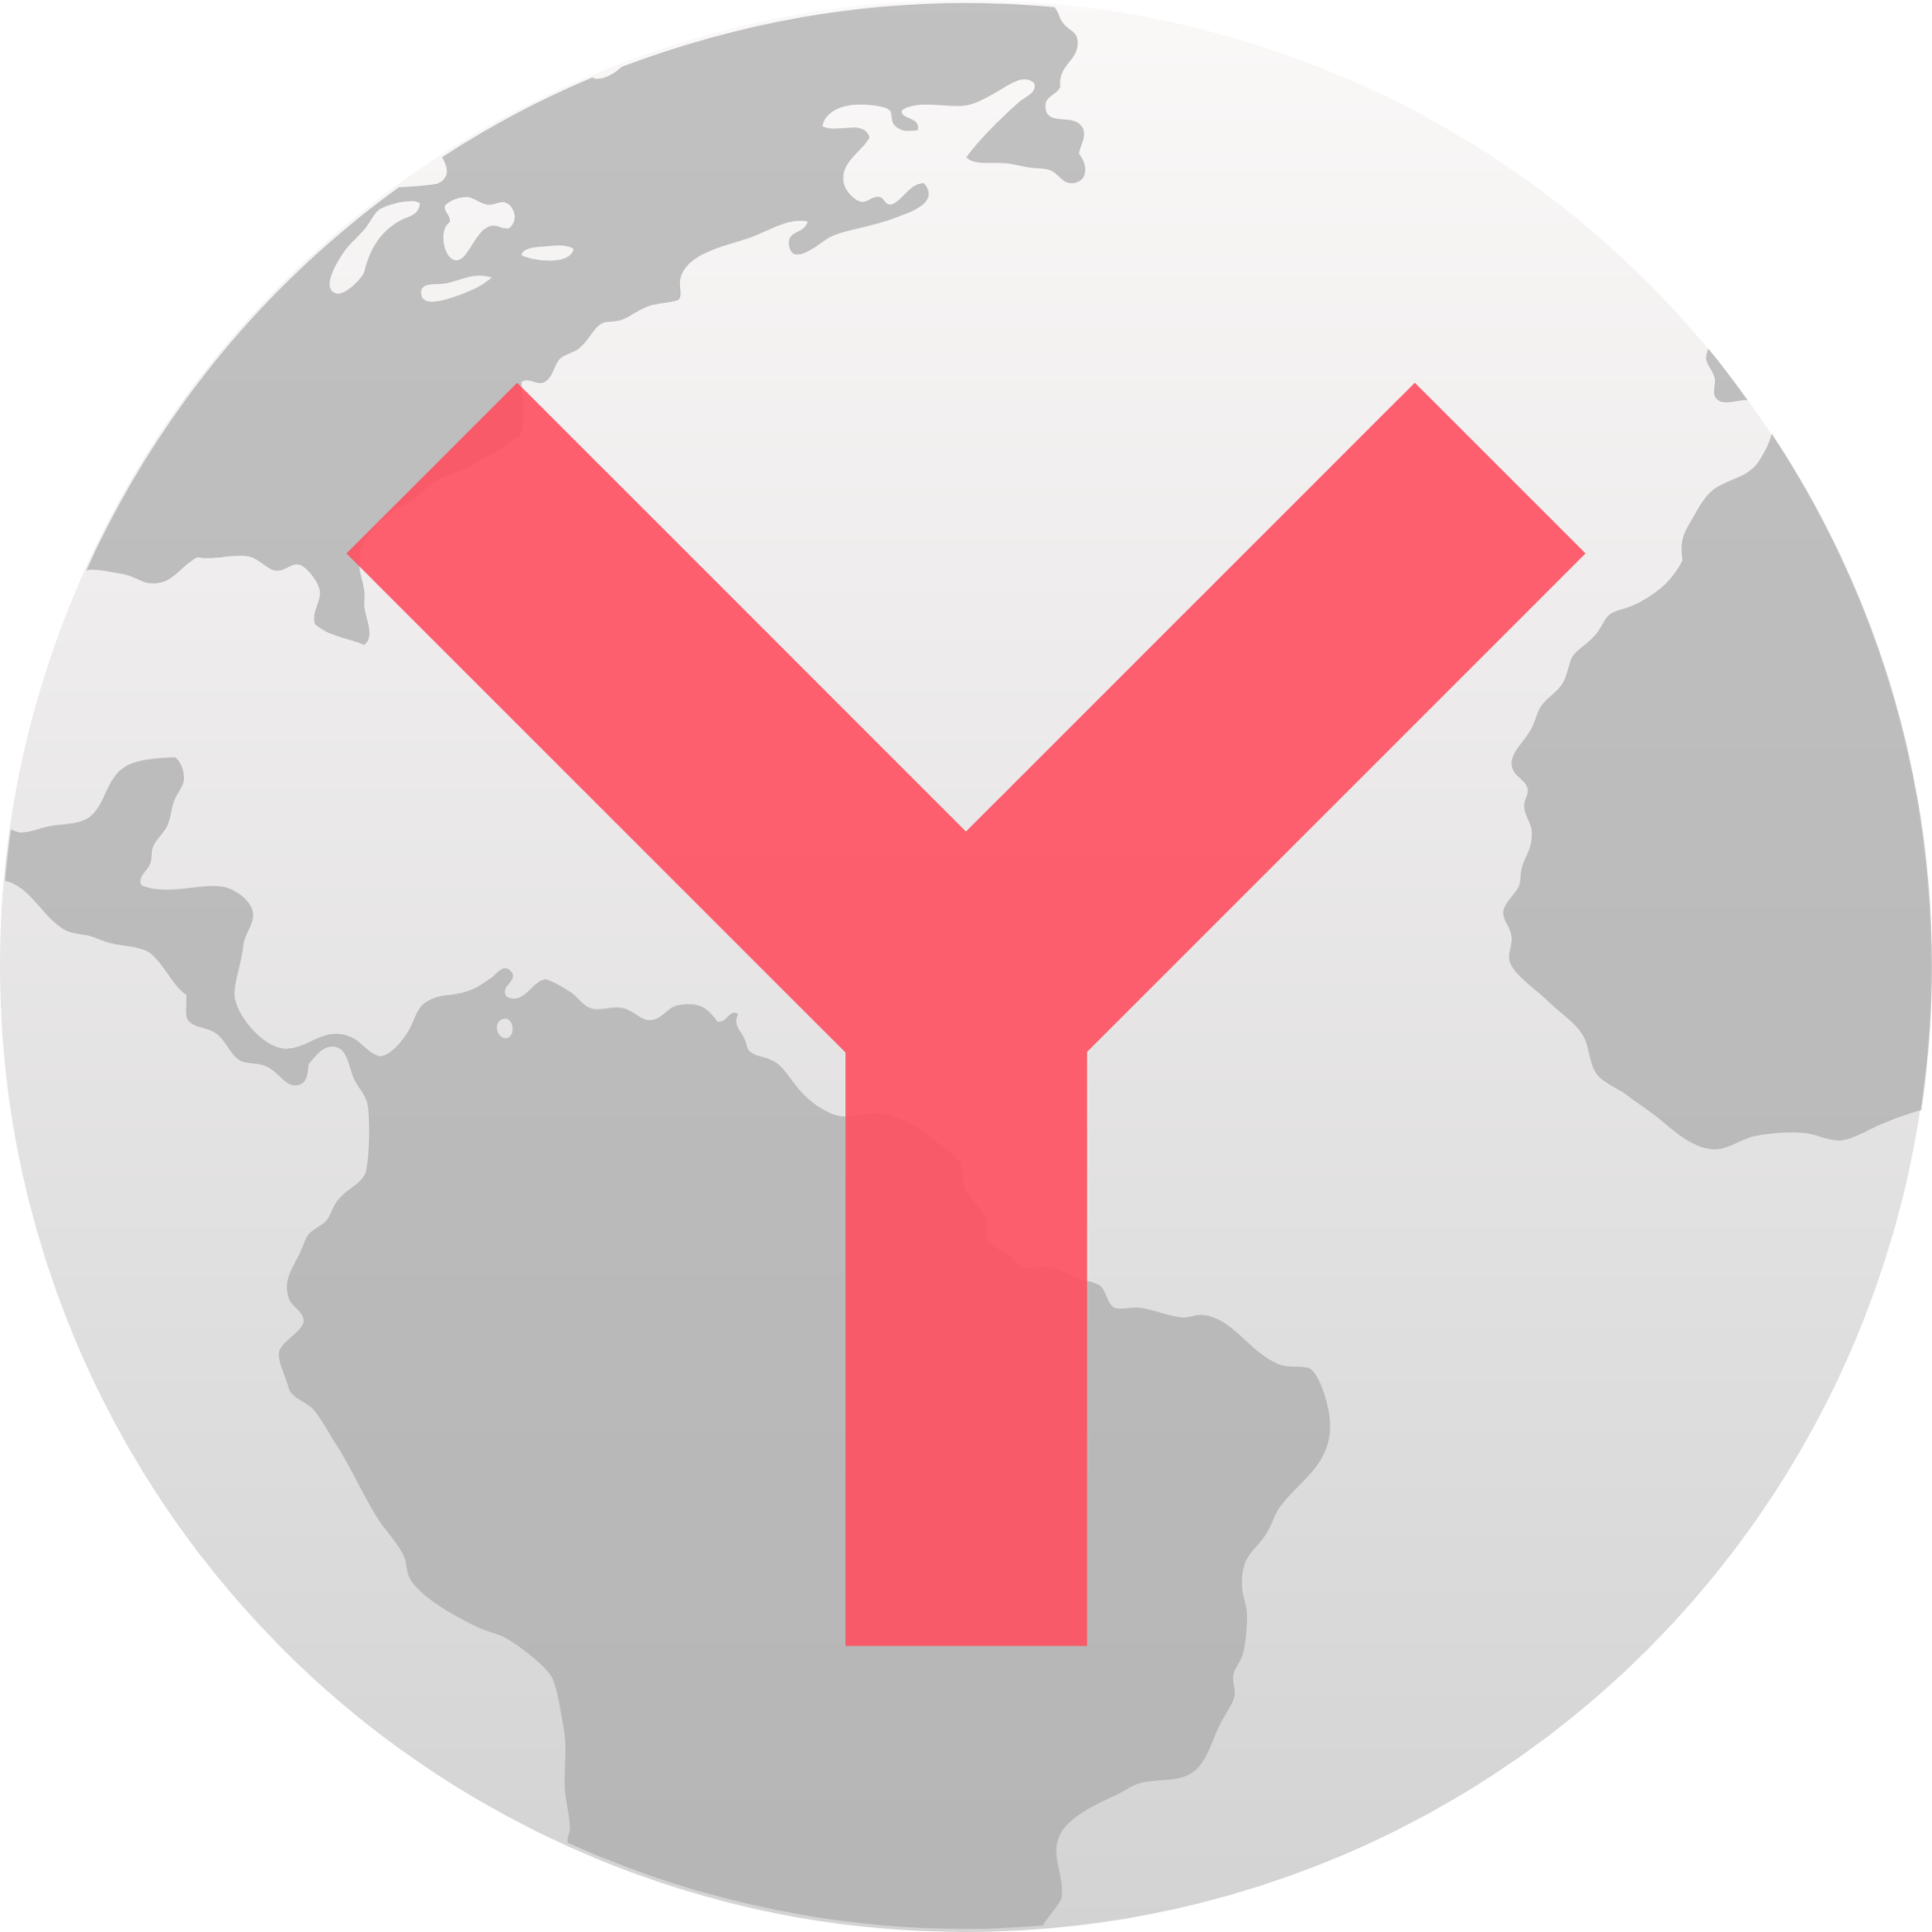 yandex browser icon